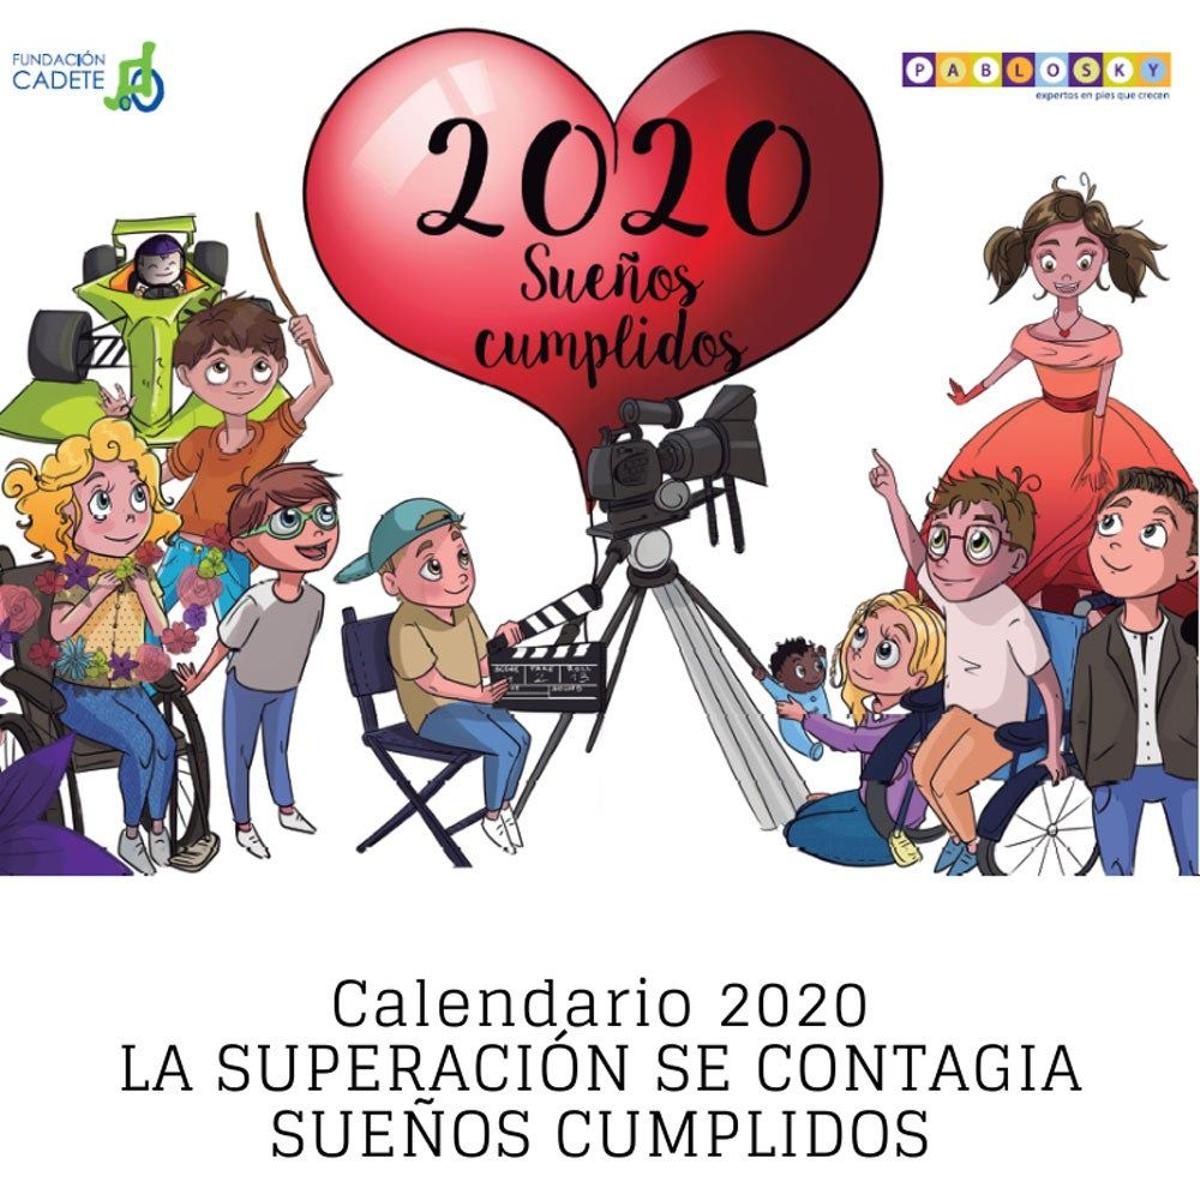 Calendario soidario ilustrado de Fundación Cadete y Pablosky (Precio: 5 euros)